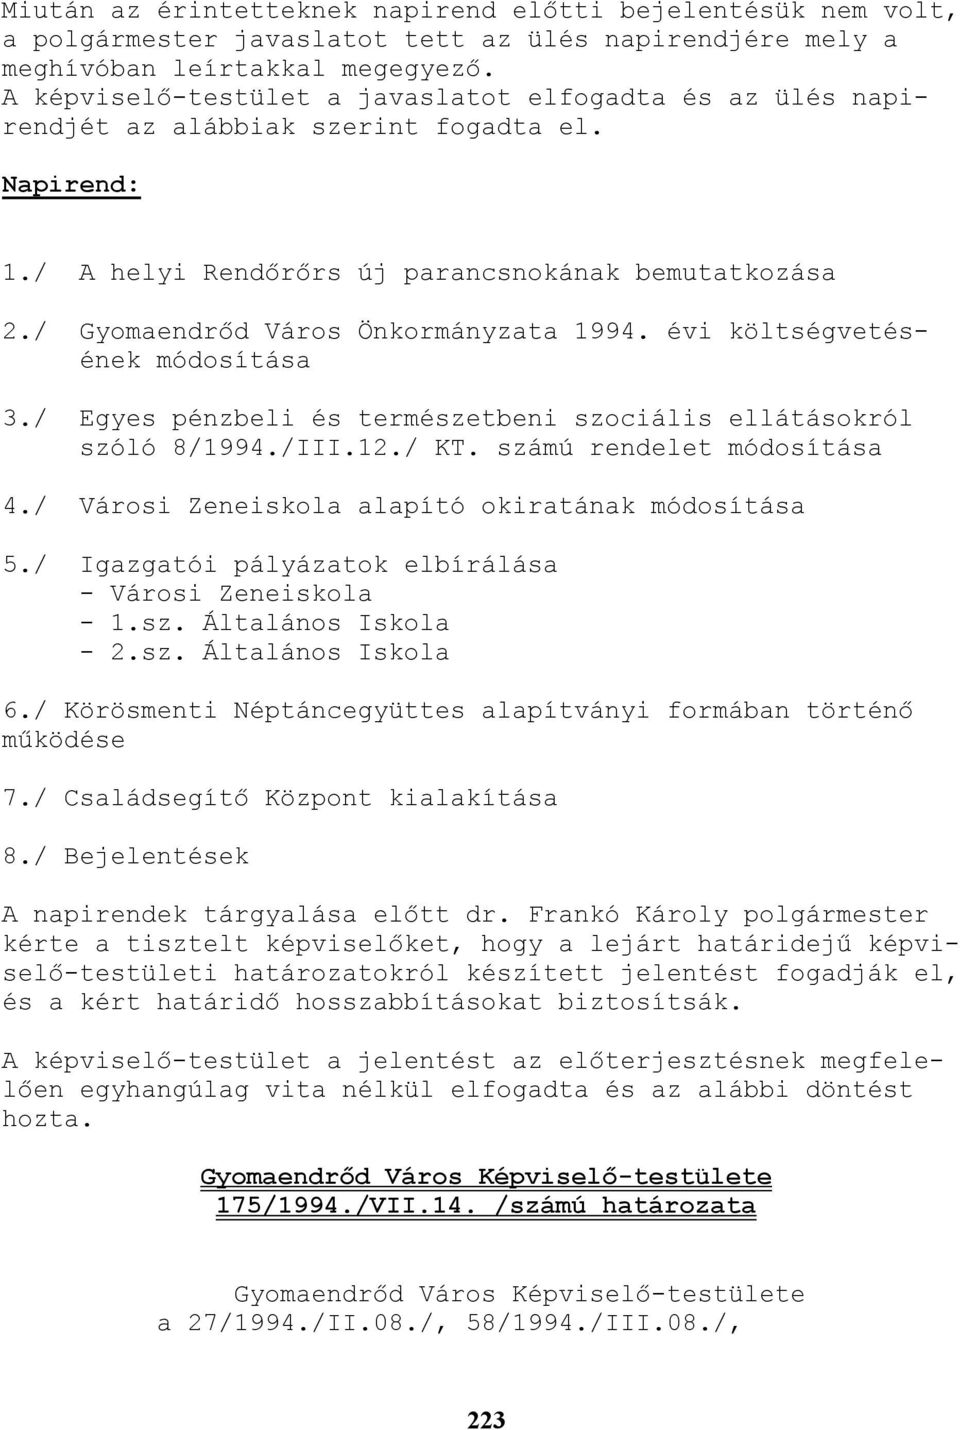 / Gyomaendrıd Város Önkormányzata 1994. évi költségvetésének módosítása 3./ Egyes pénzbeli és természetbeni szociális ellátásokról szóló 8/1994./III.12./ KT. számú rendelet módosítása 4.